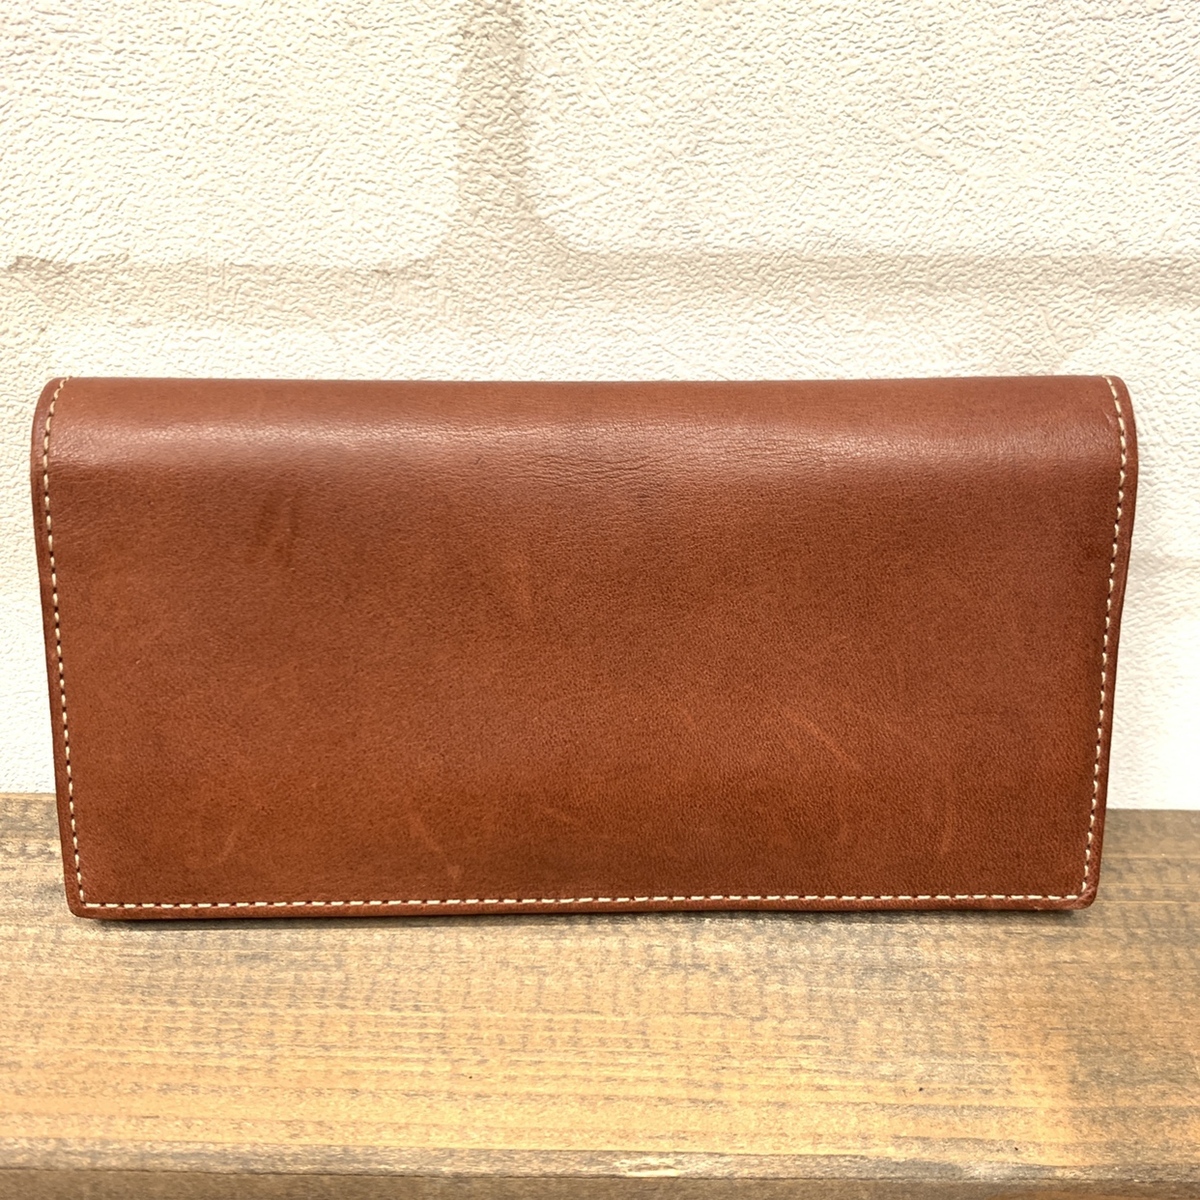 土屋鞄製造所のディアリオシリーズ ブラウン 2つ折り 長財布の買取実績です。